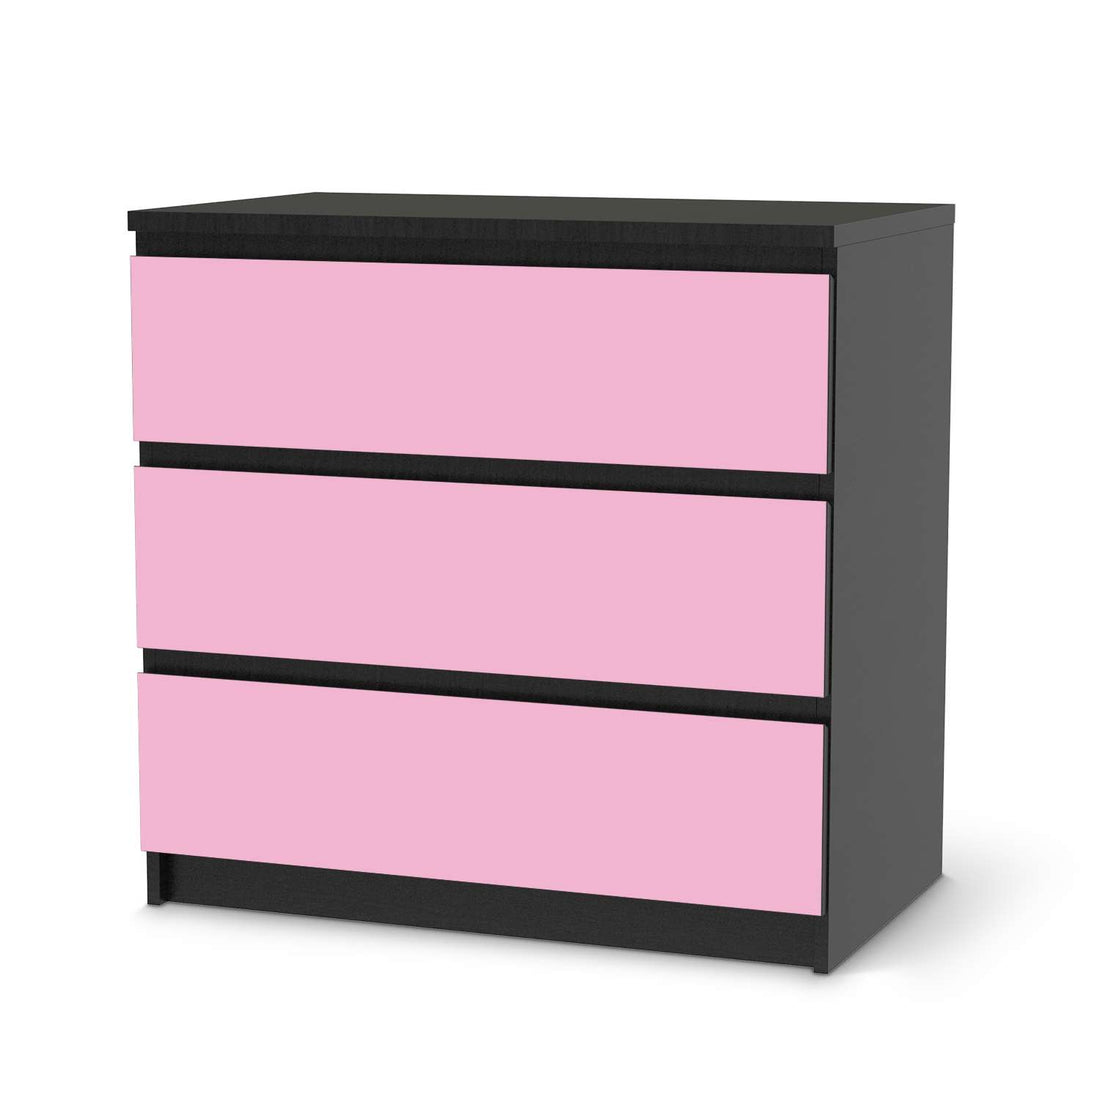 Klebefolie für Möbel Pink Light - IKEA Malm Kommode 3 Schubladen - schwarz